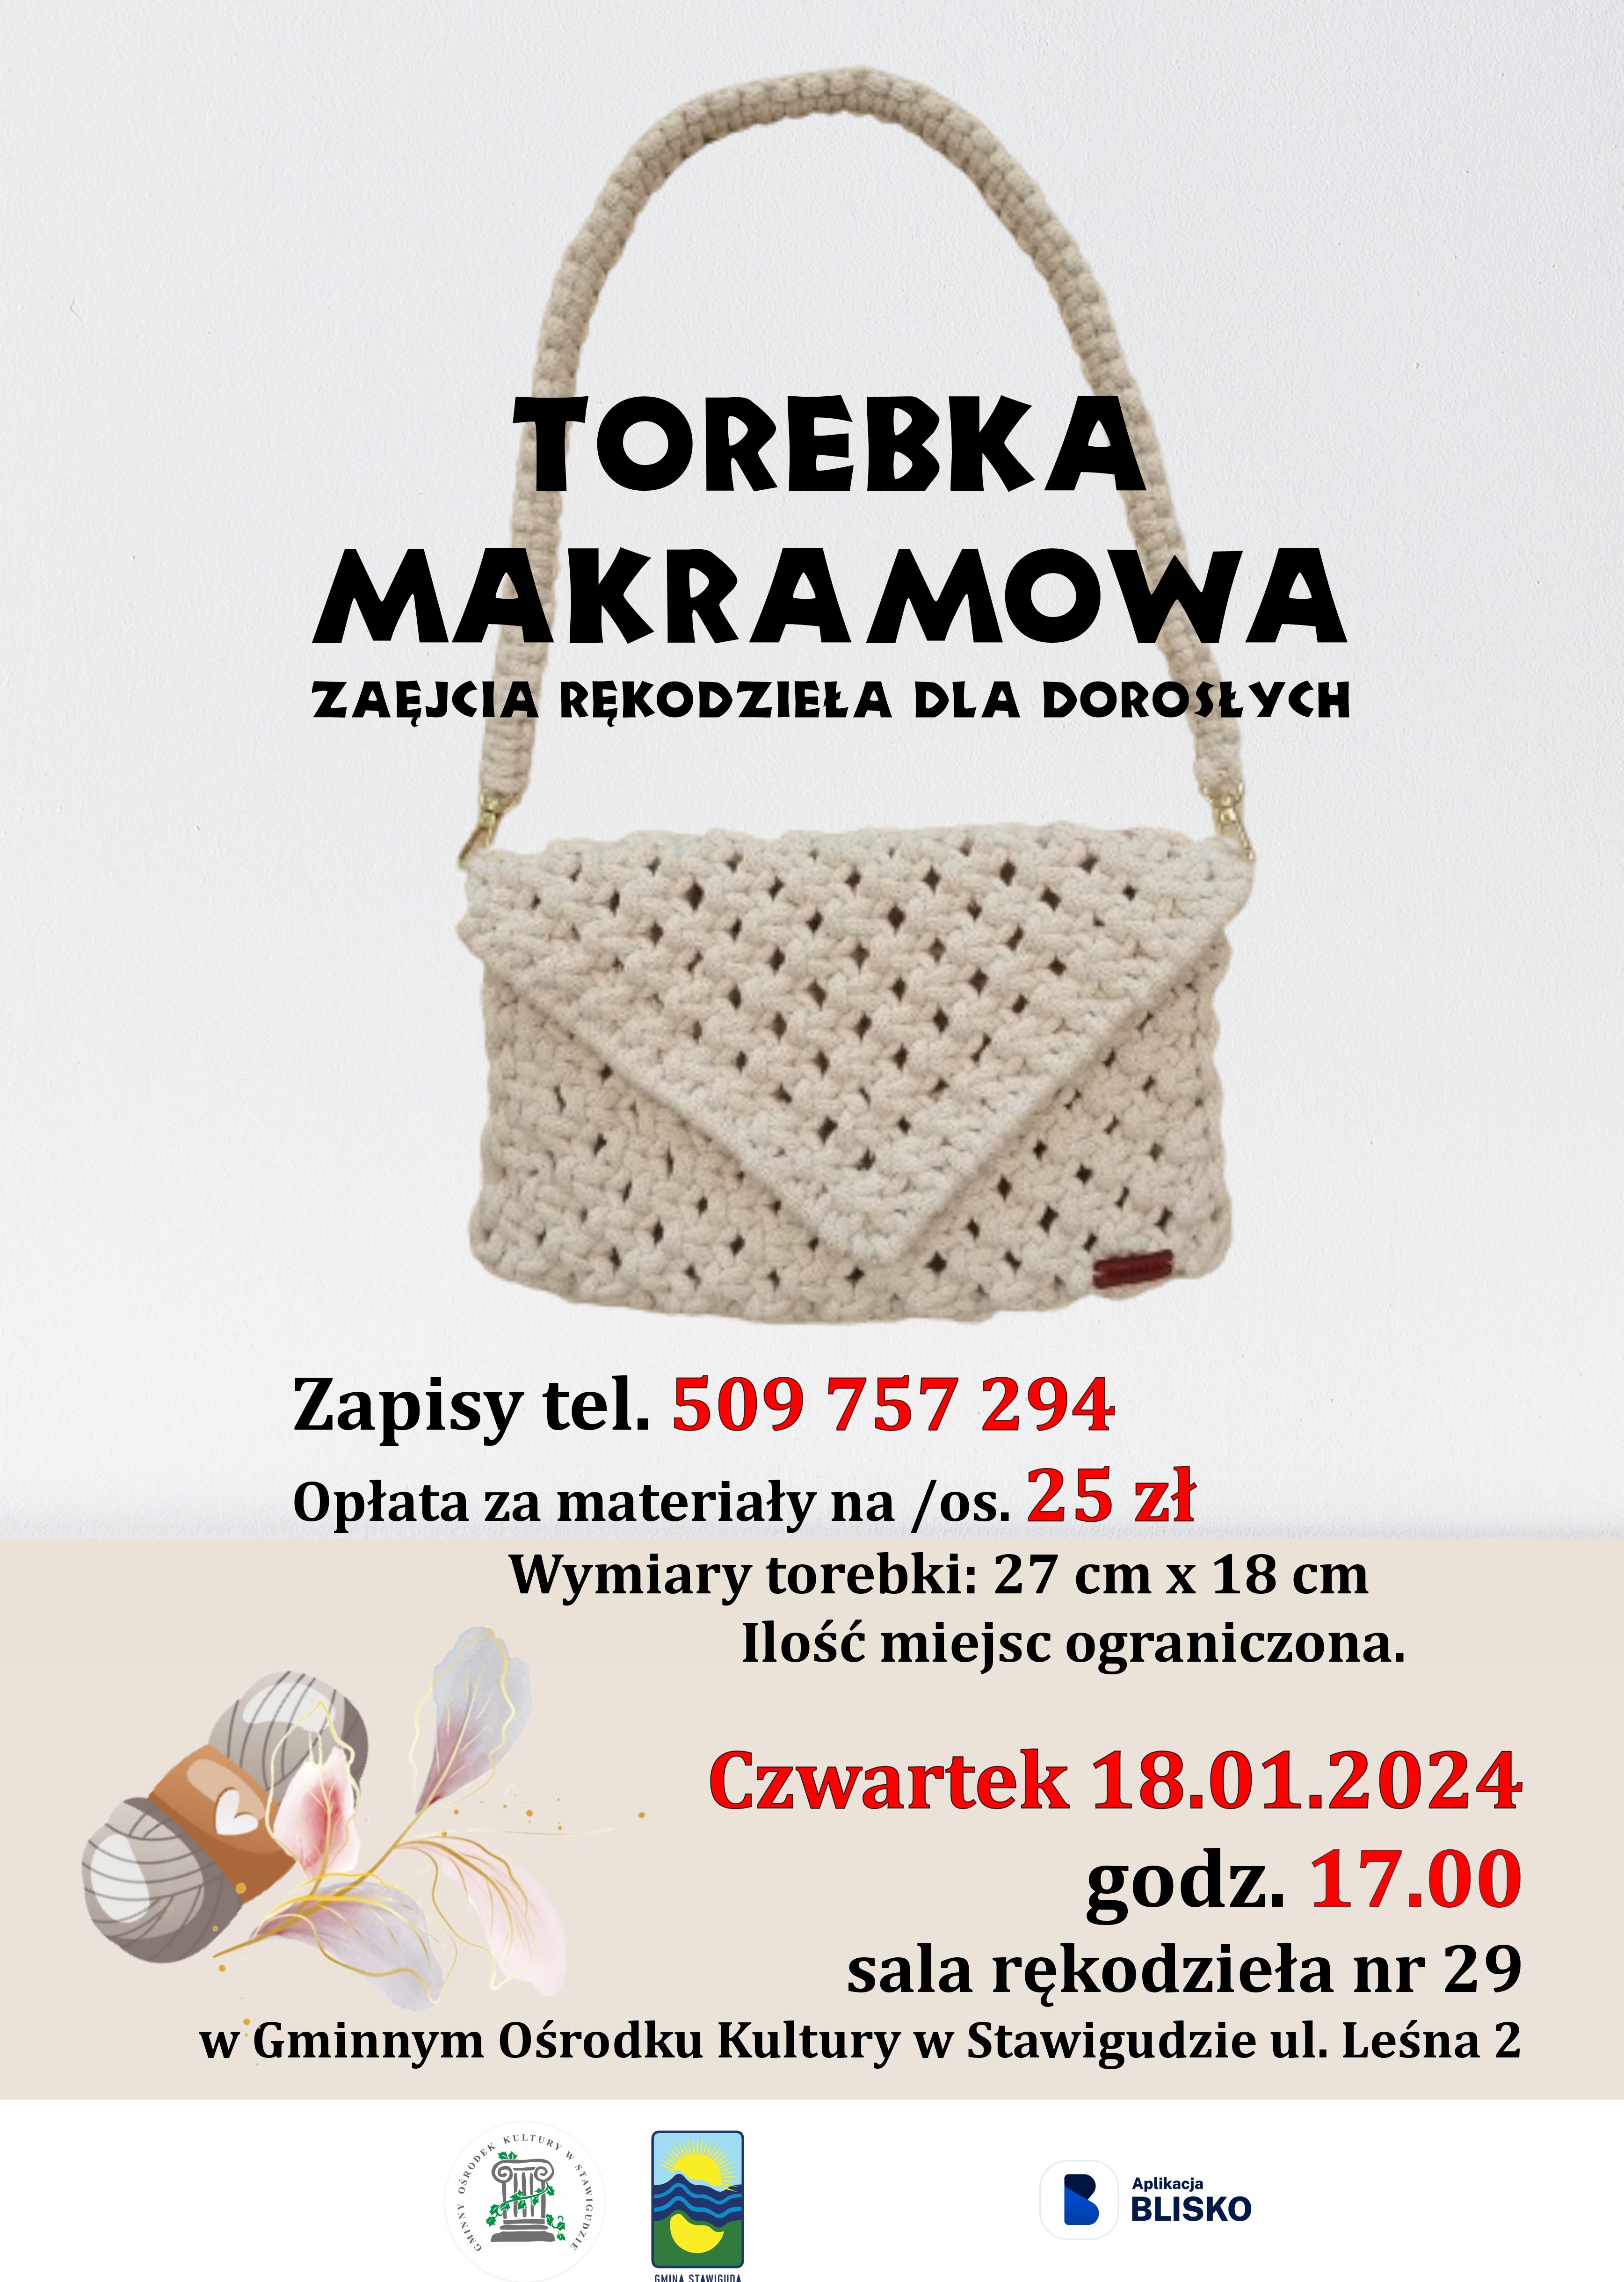 Torebka_makramowa-plakat_do_stawigudy.jpg